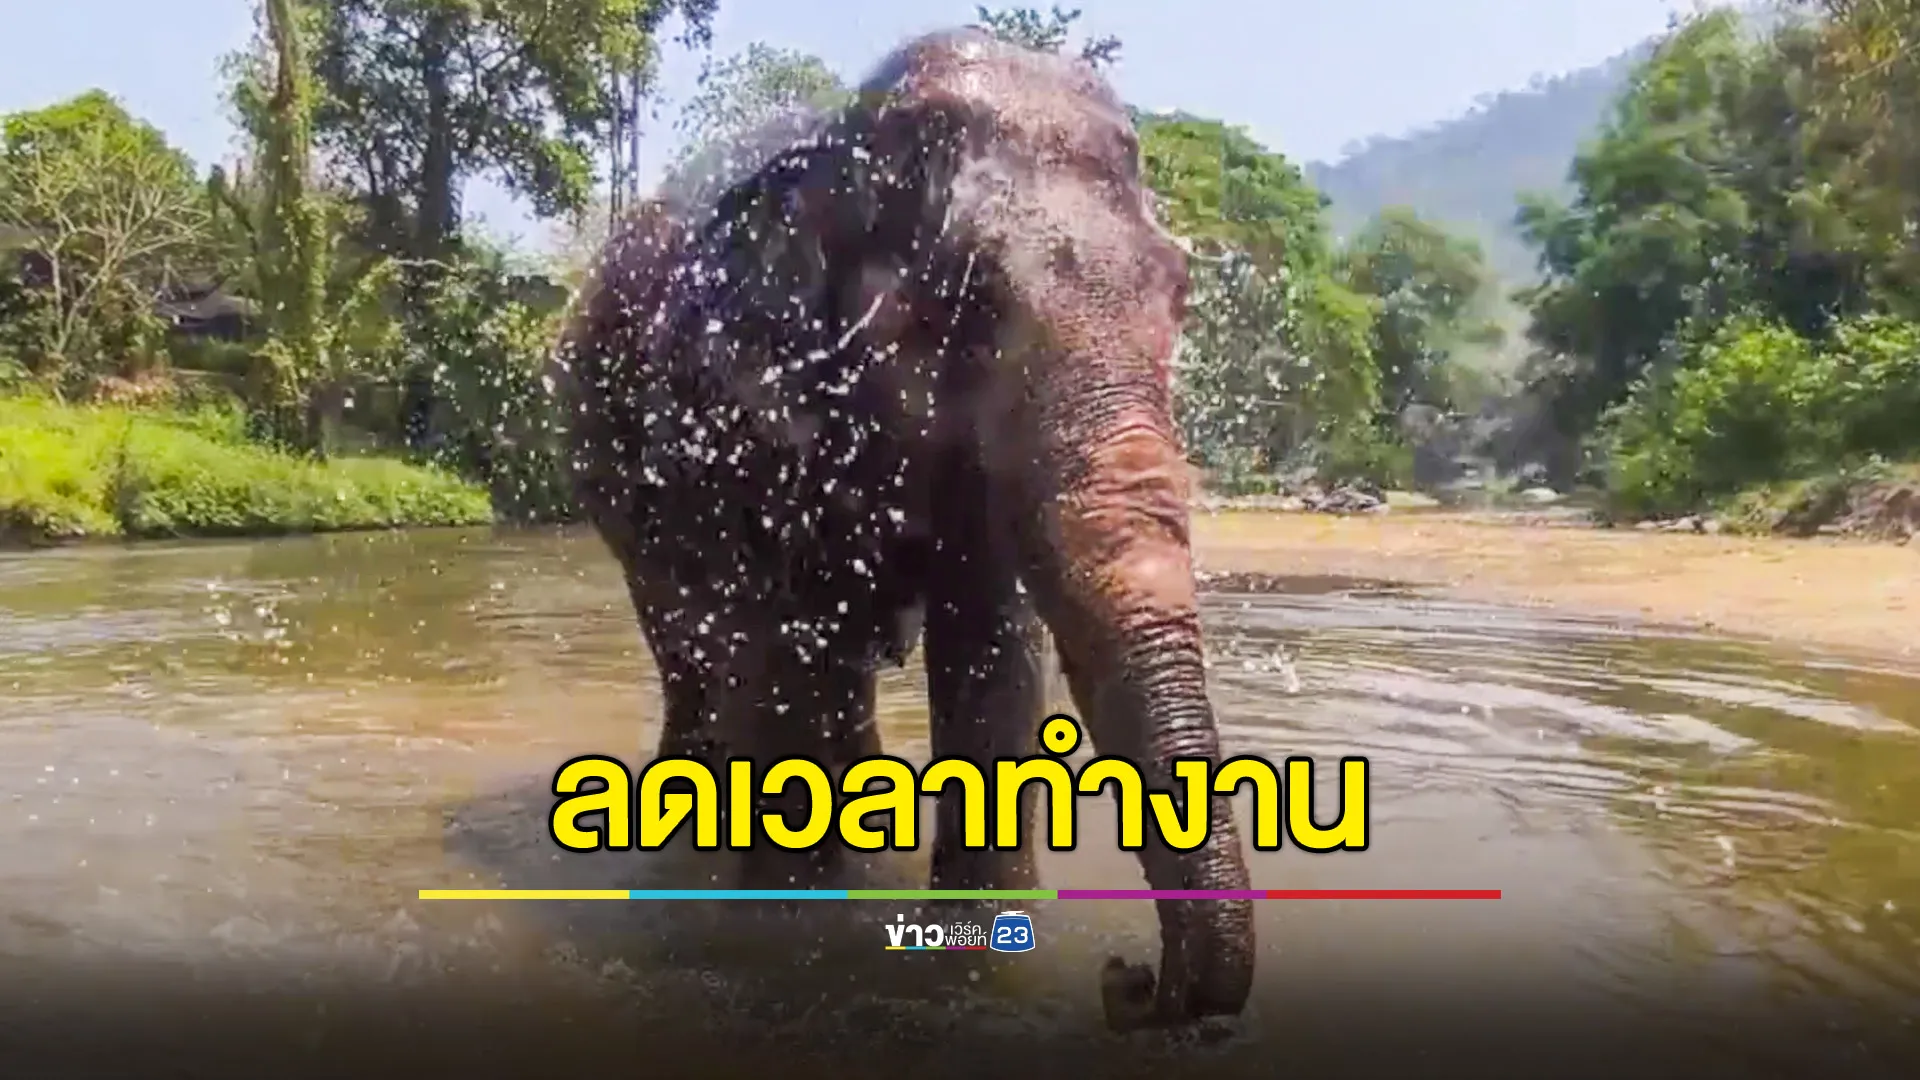 ปางช้างสั่งลดเวลาทำงาน-เพิ่มเวลาให้ช้างเล่นน้ำ ป้องกันช้างเครียดเหตุอากาศร้อนจัด